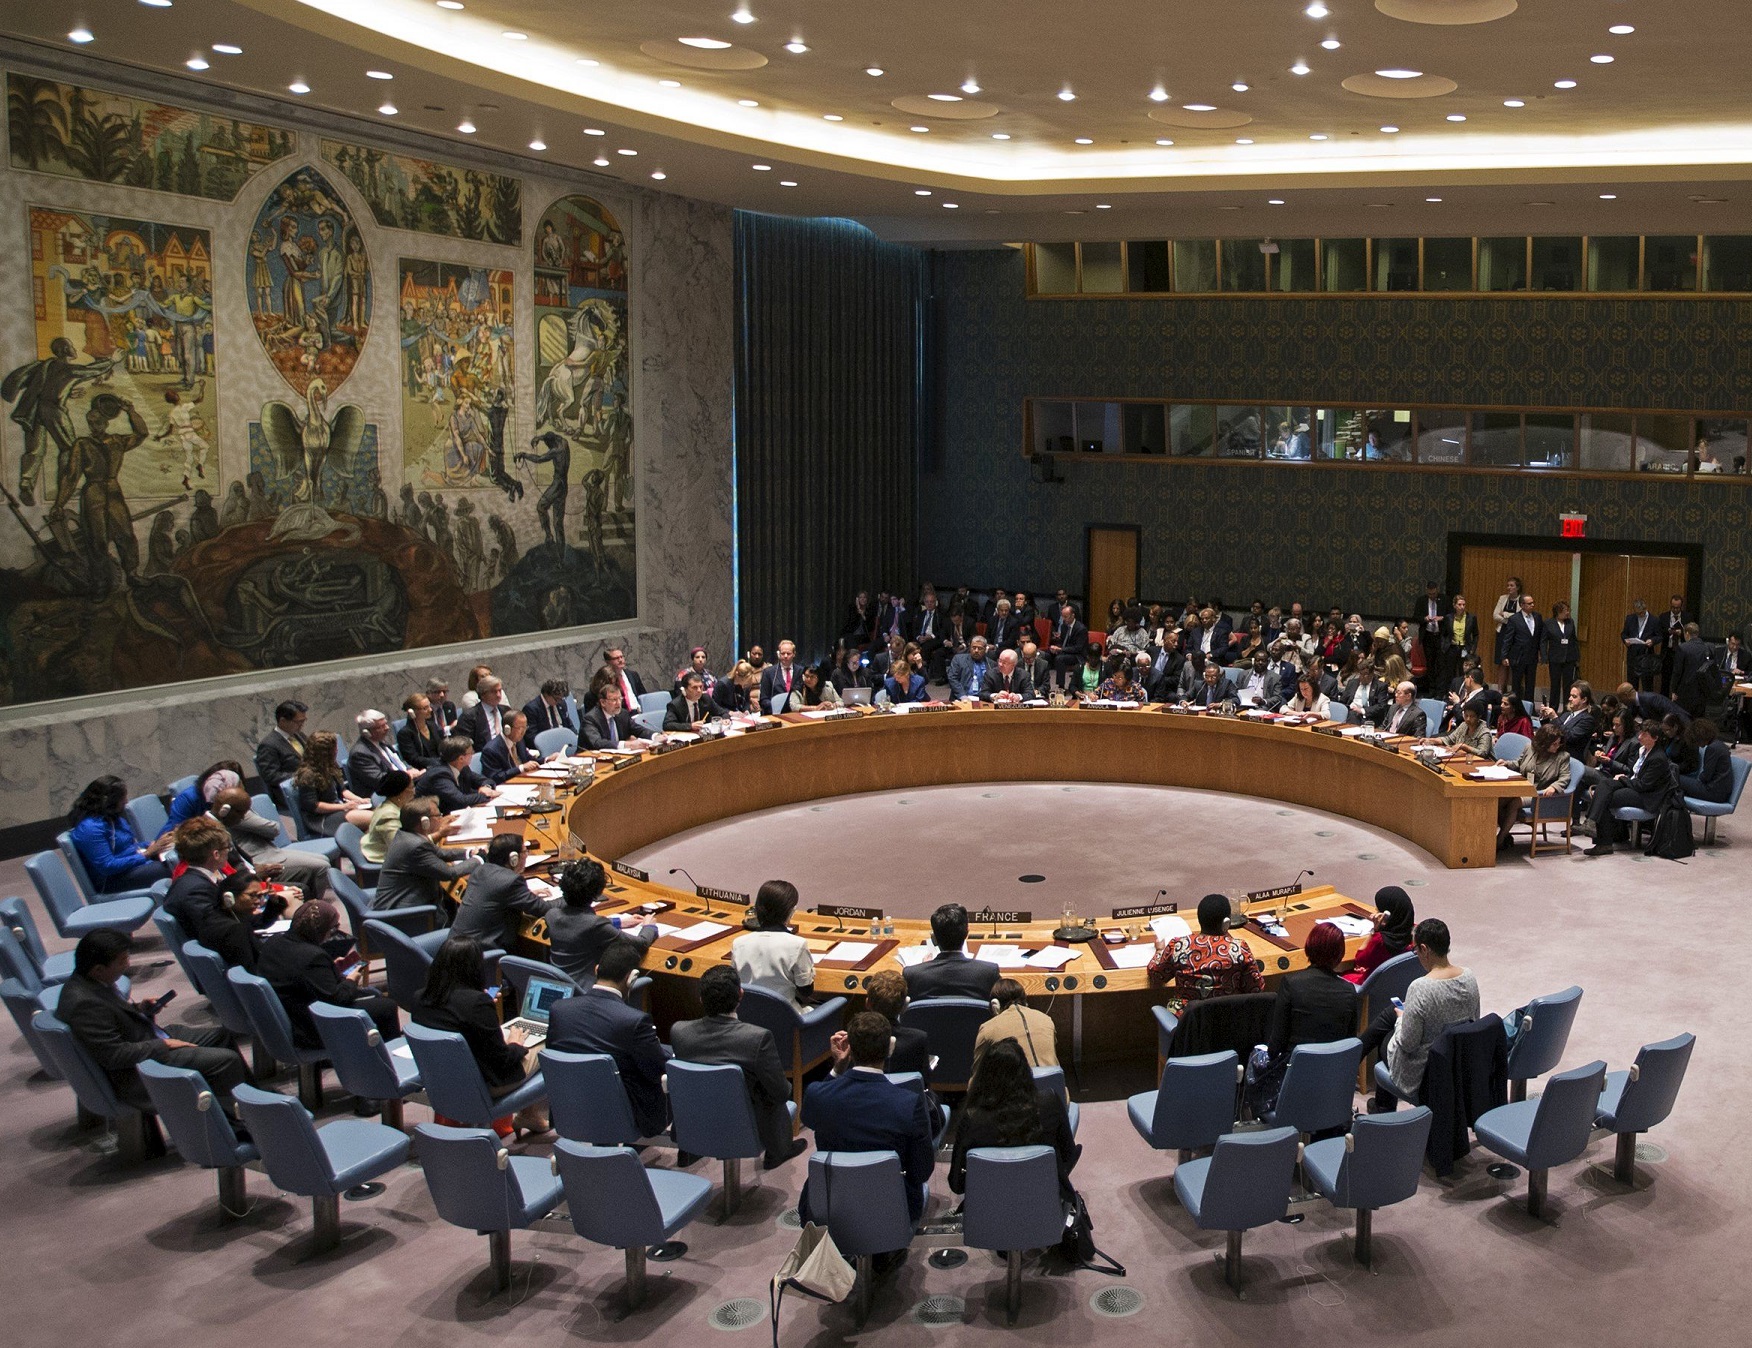 В ООН призвали срочно ввести допмеры по урегулированию на Донбассе